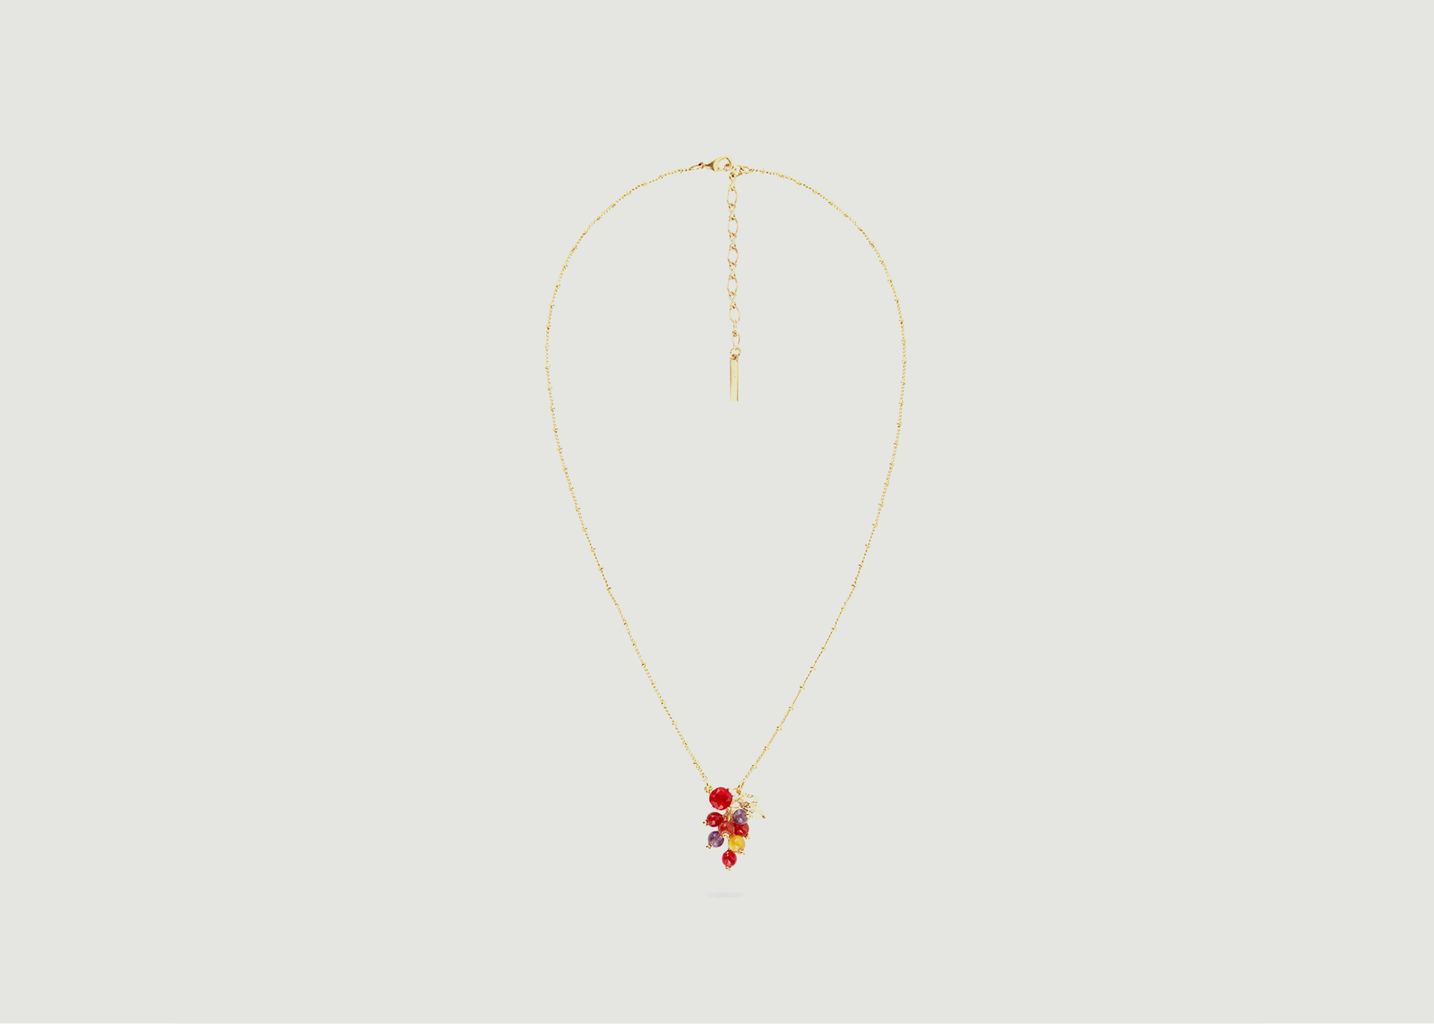 Thin necklace with grapes and vine leaf pendant - Les Néréides